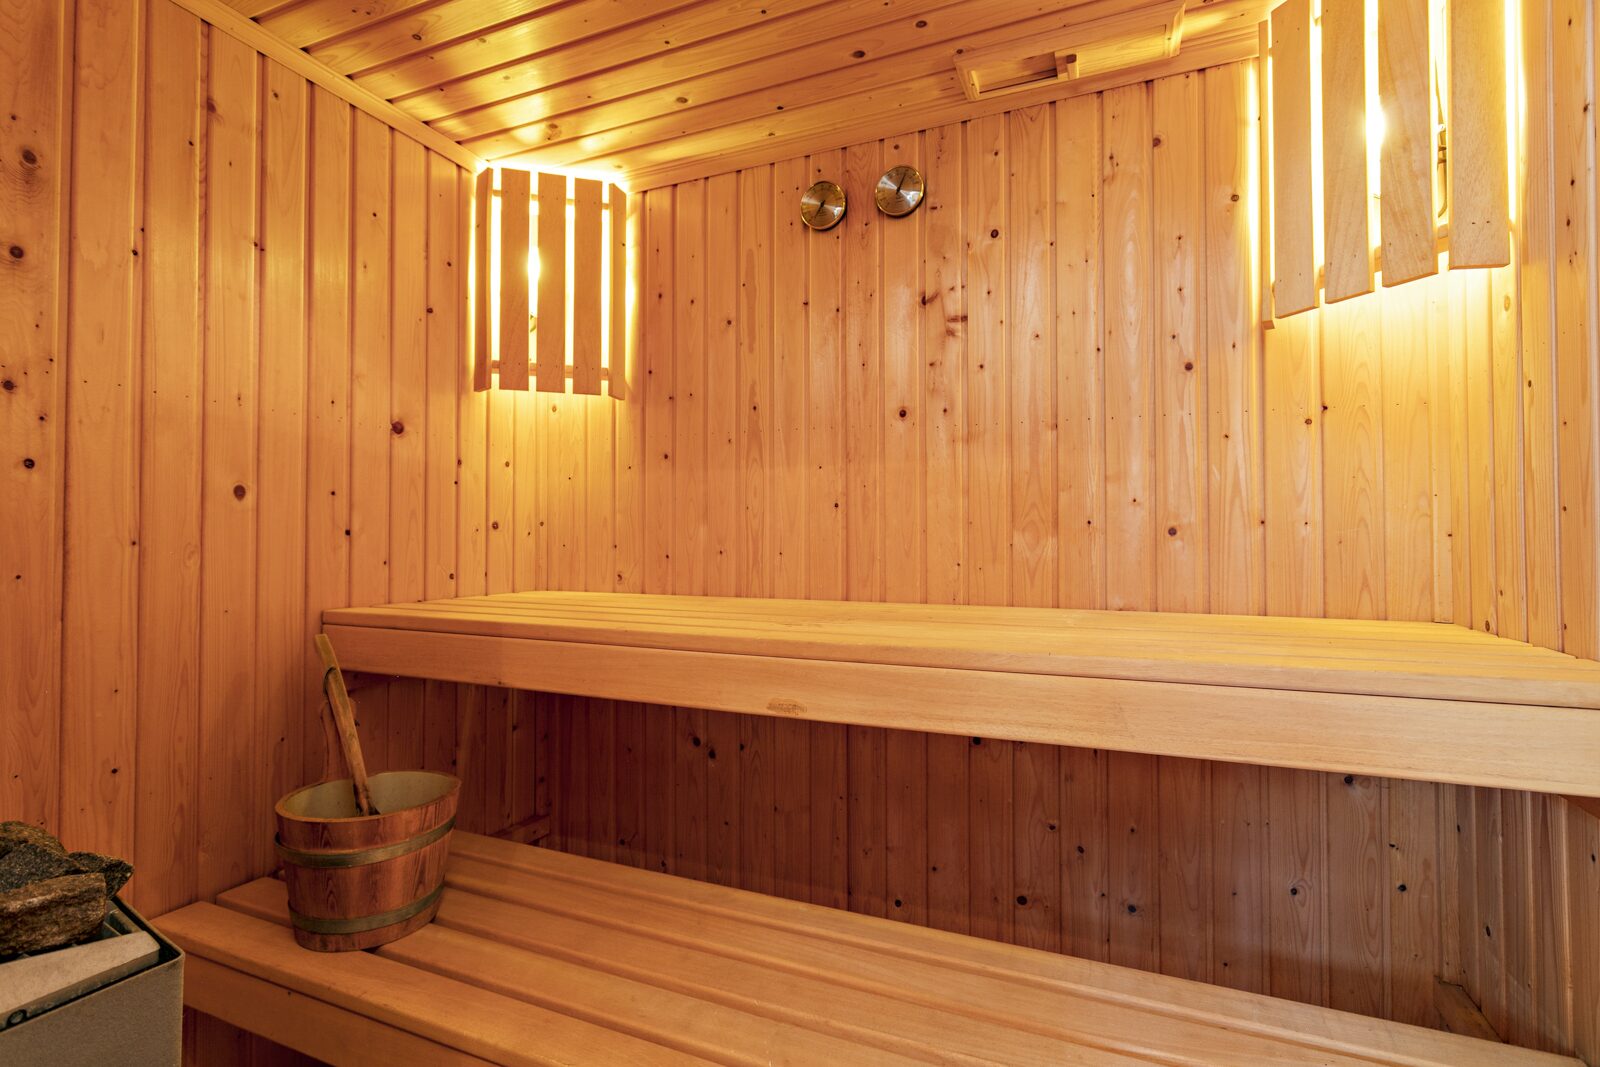 Prinsenhof 68 - Ouddorp ( met sauna extra kosten voor gebruik )